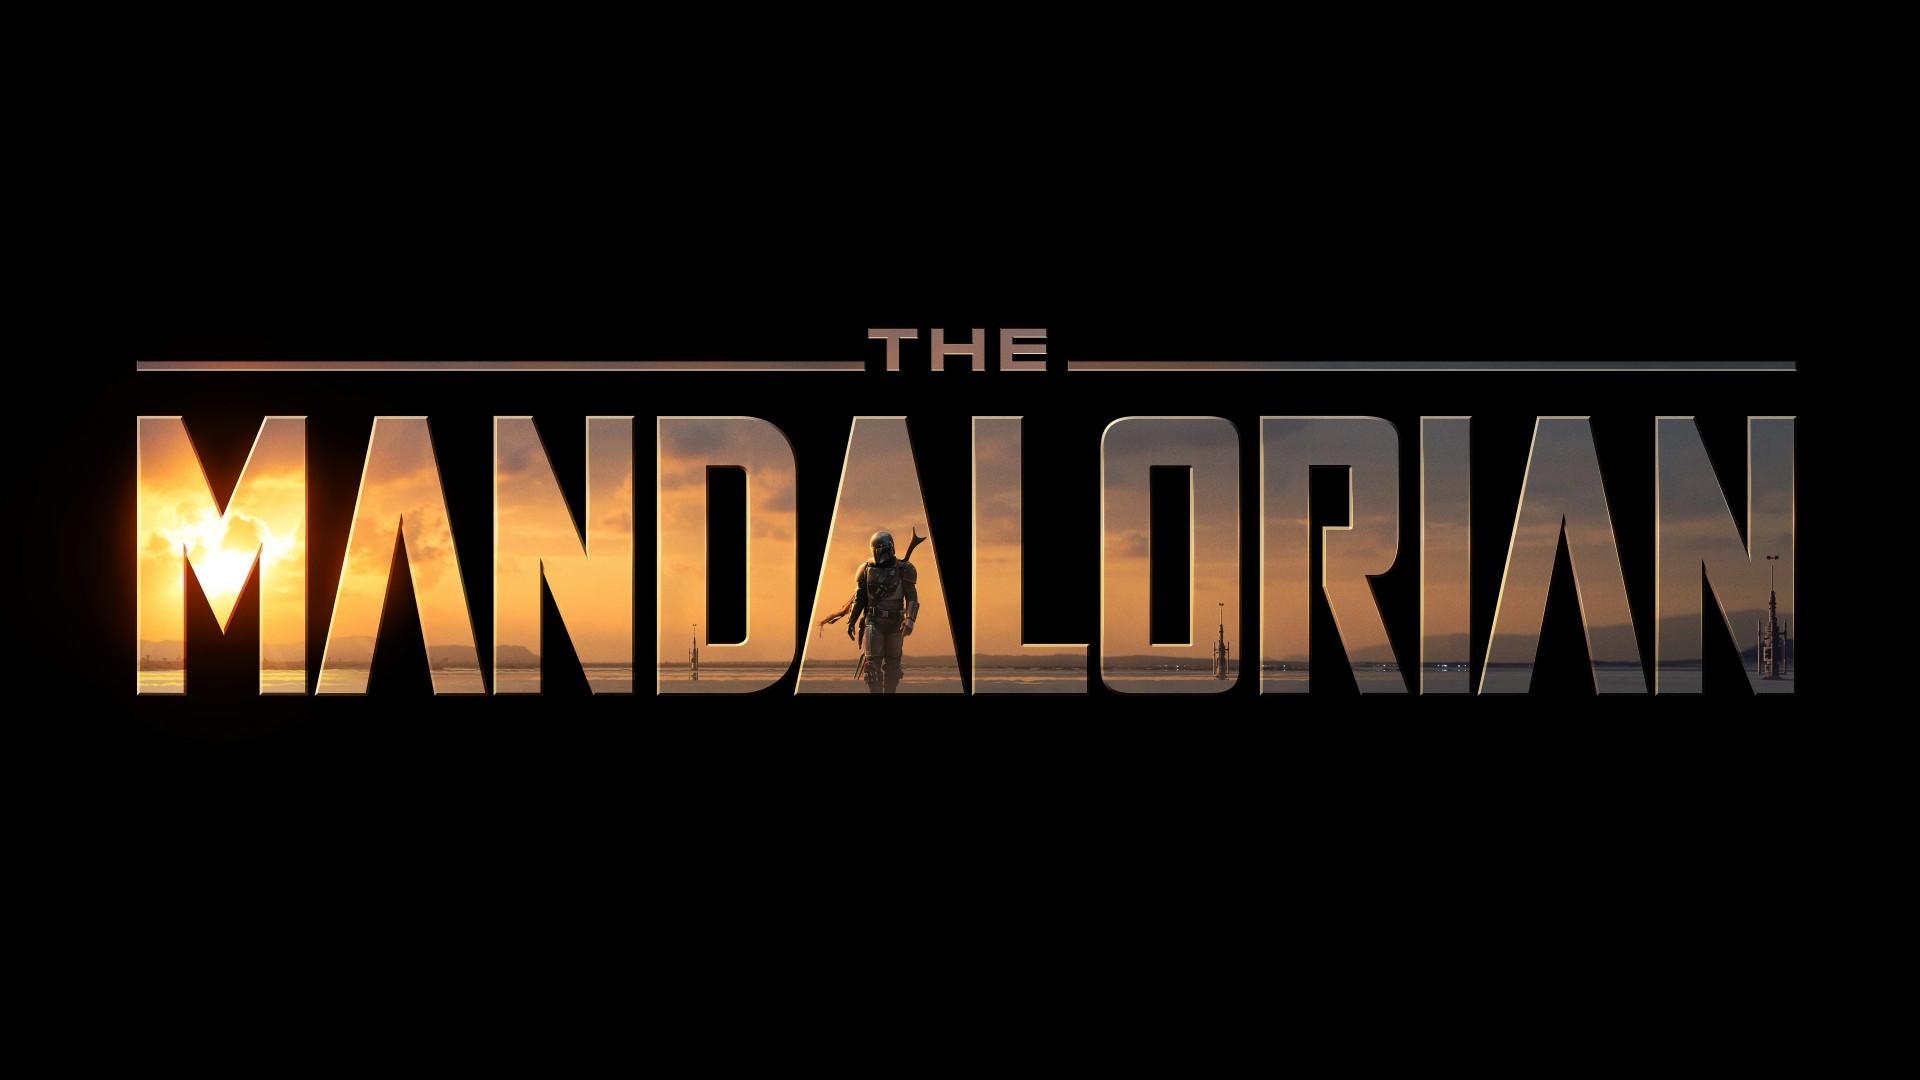 Download 1920x1080 The Mandalorian, Tv Series, Star Wars Wallpaper